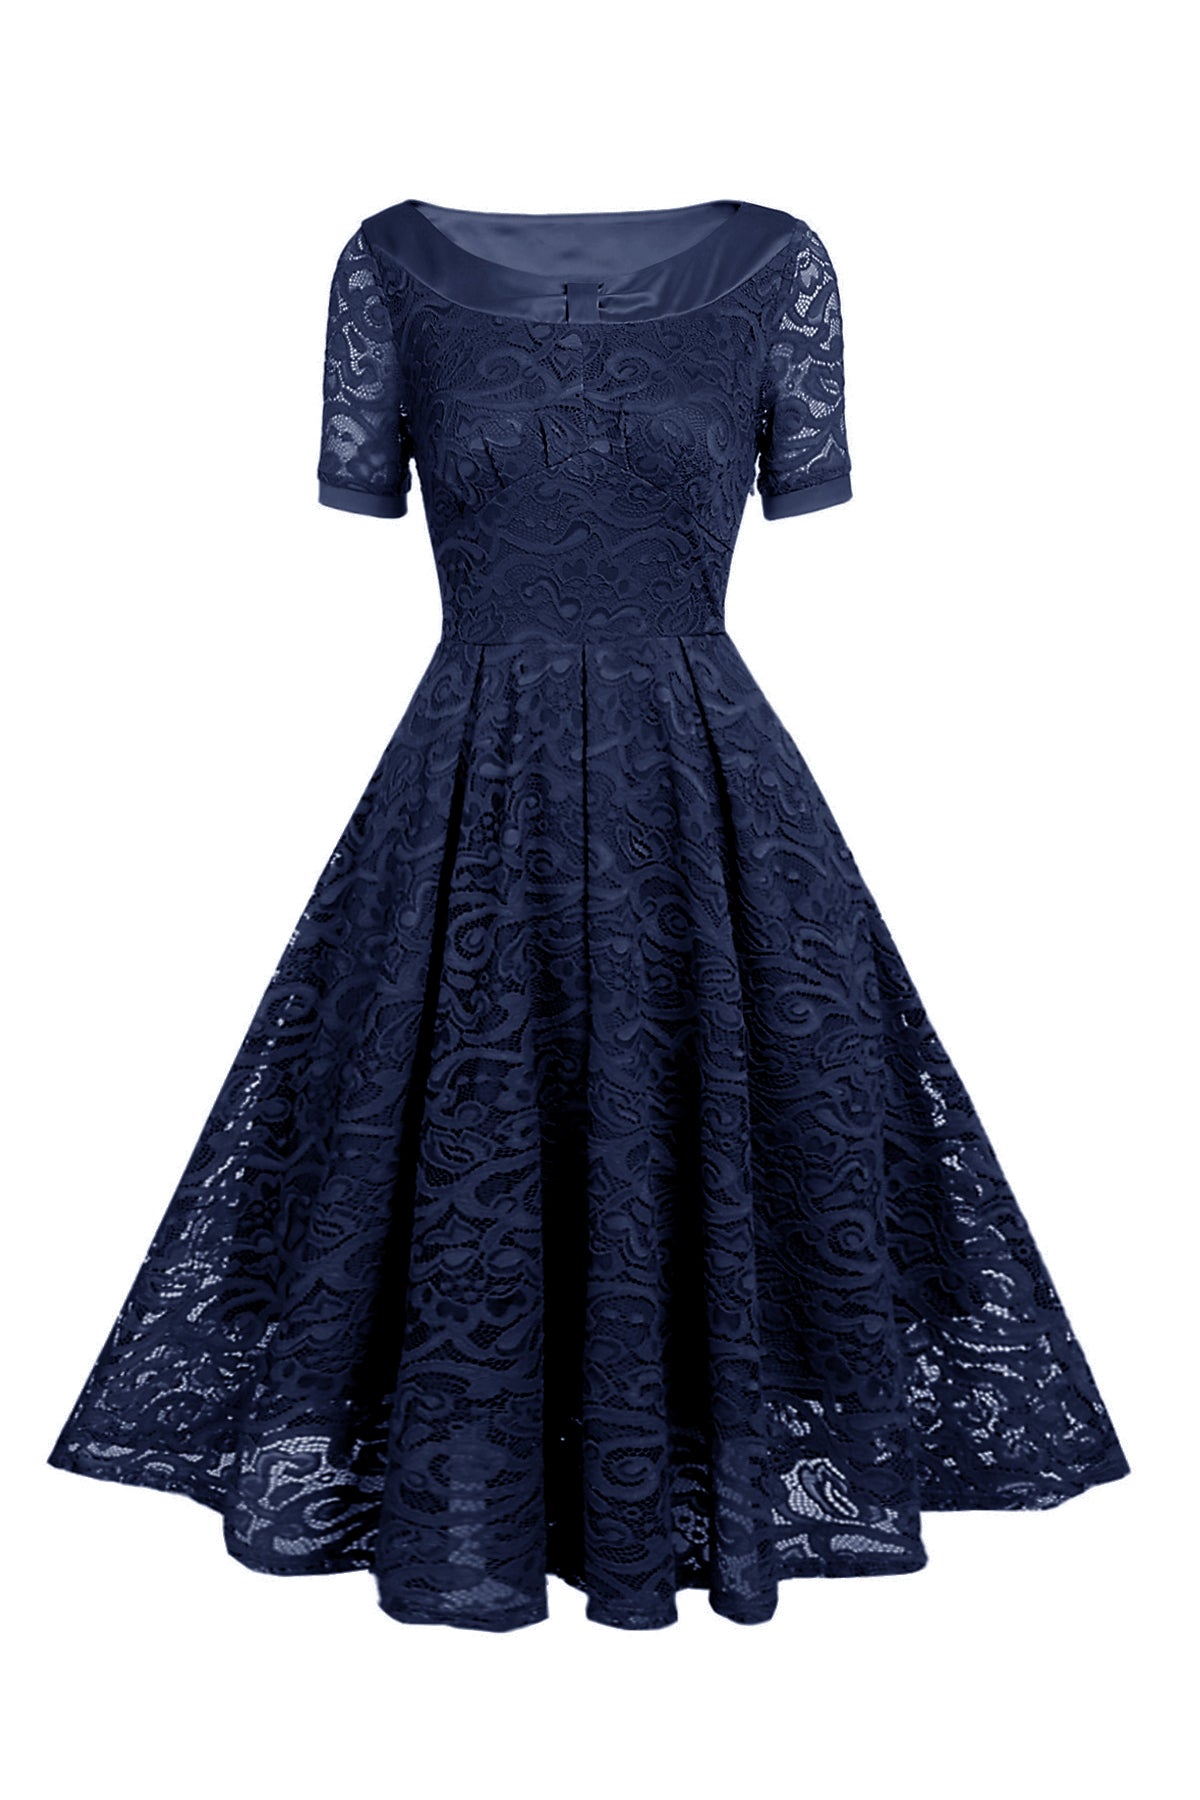 Bateau Tight Waist Short Sleeve Vintage Dresses